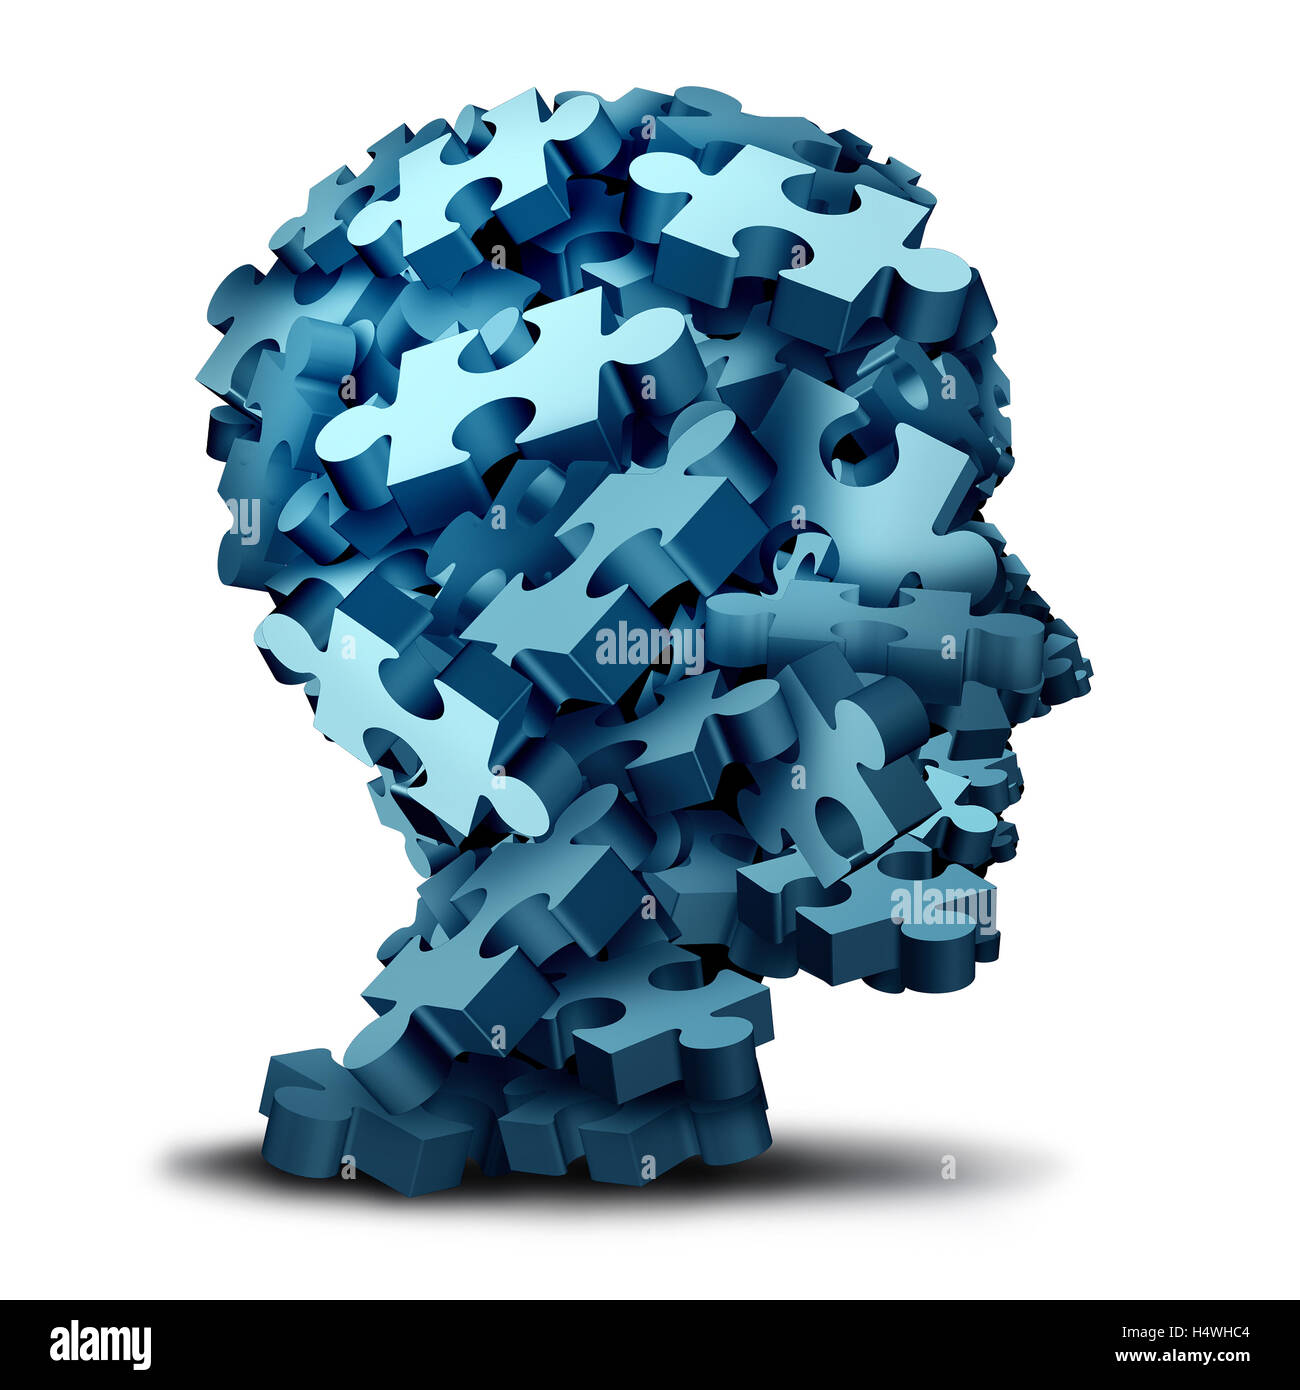 Puzzle psychologie concept comme un groupe d'illustration 3D de pièces de puzzle en forme de tête humaine comme un symbole de la santé mentale pour la psychiatrie ou la psychologie et du cerveau apparaît sur une backbround blanc. Banque D'Images